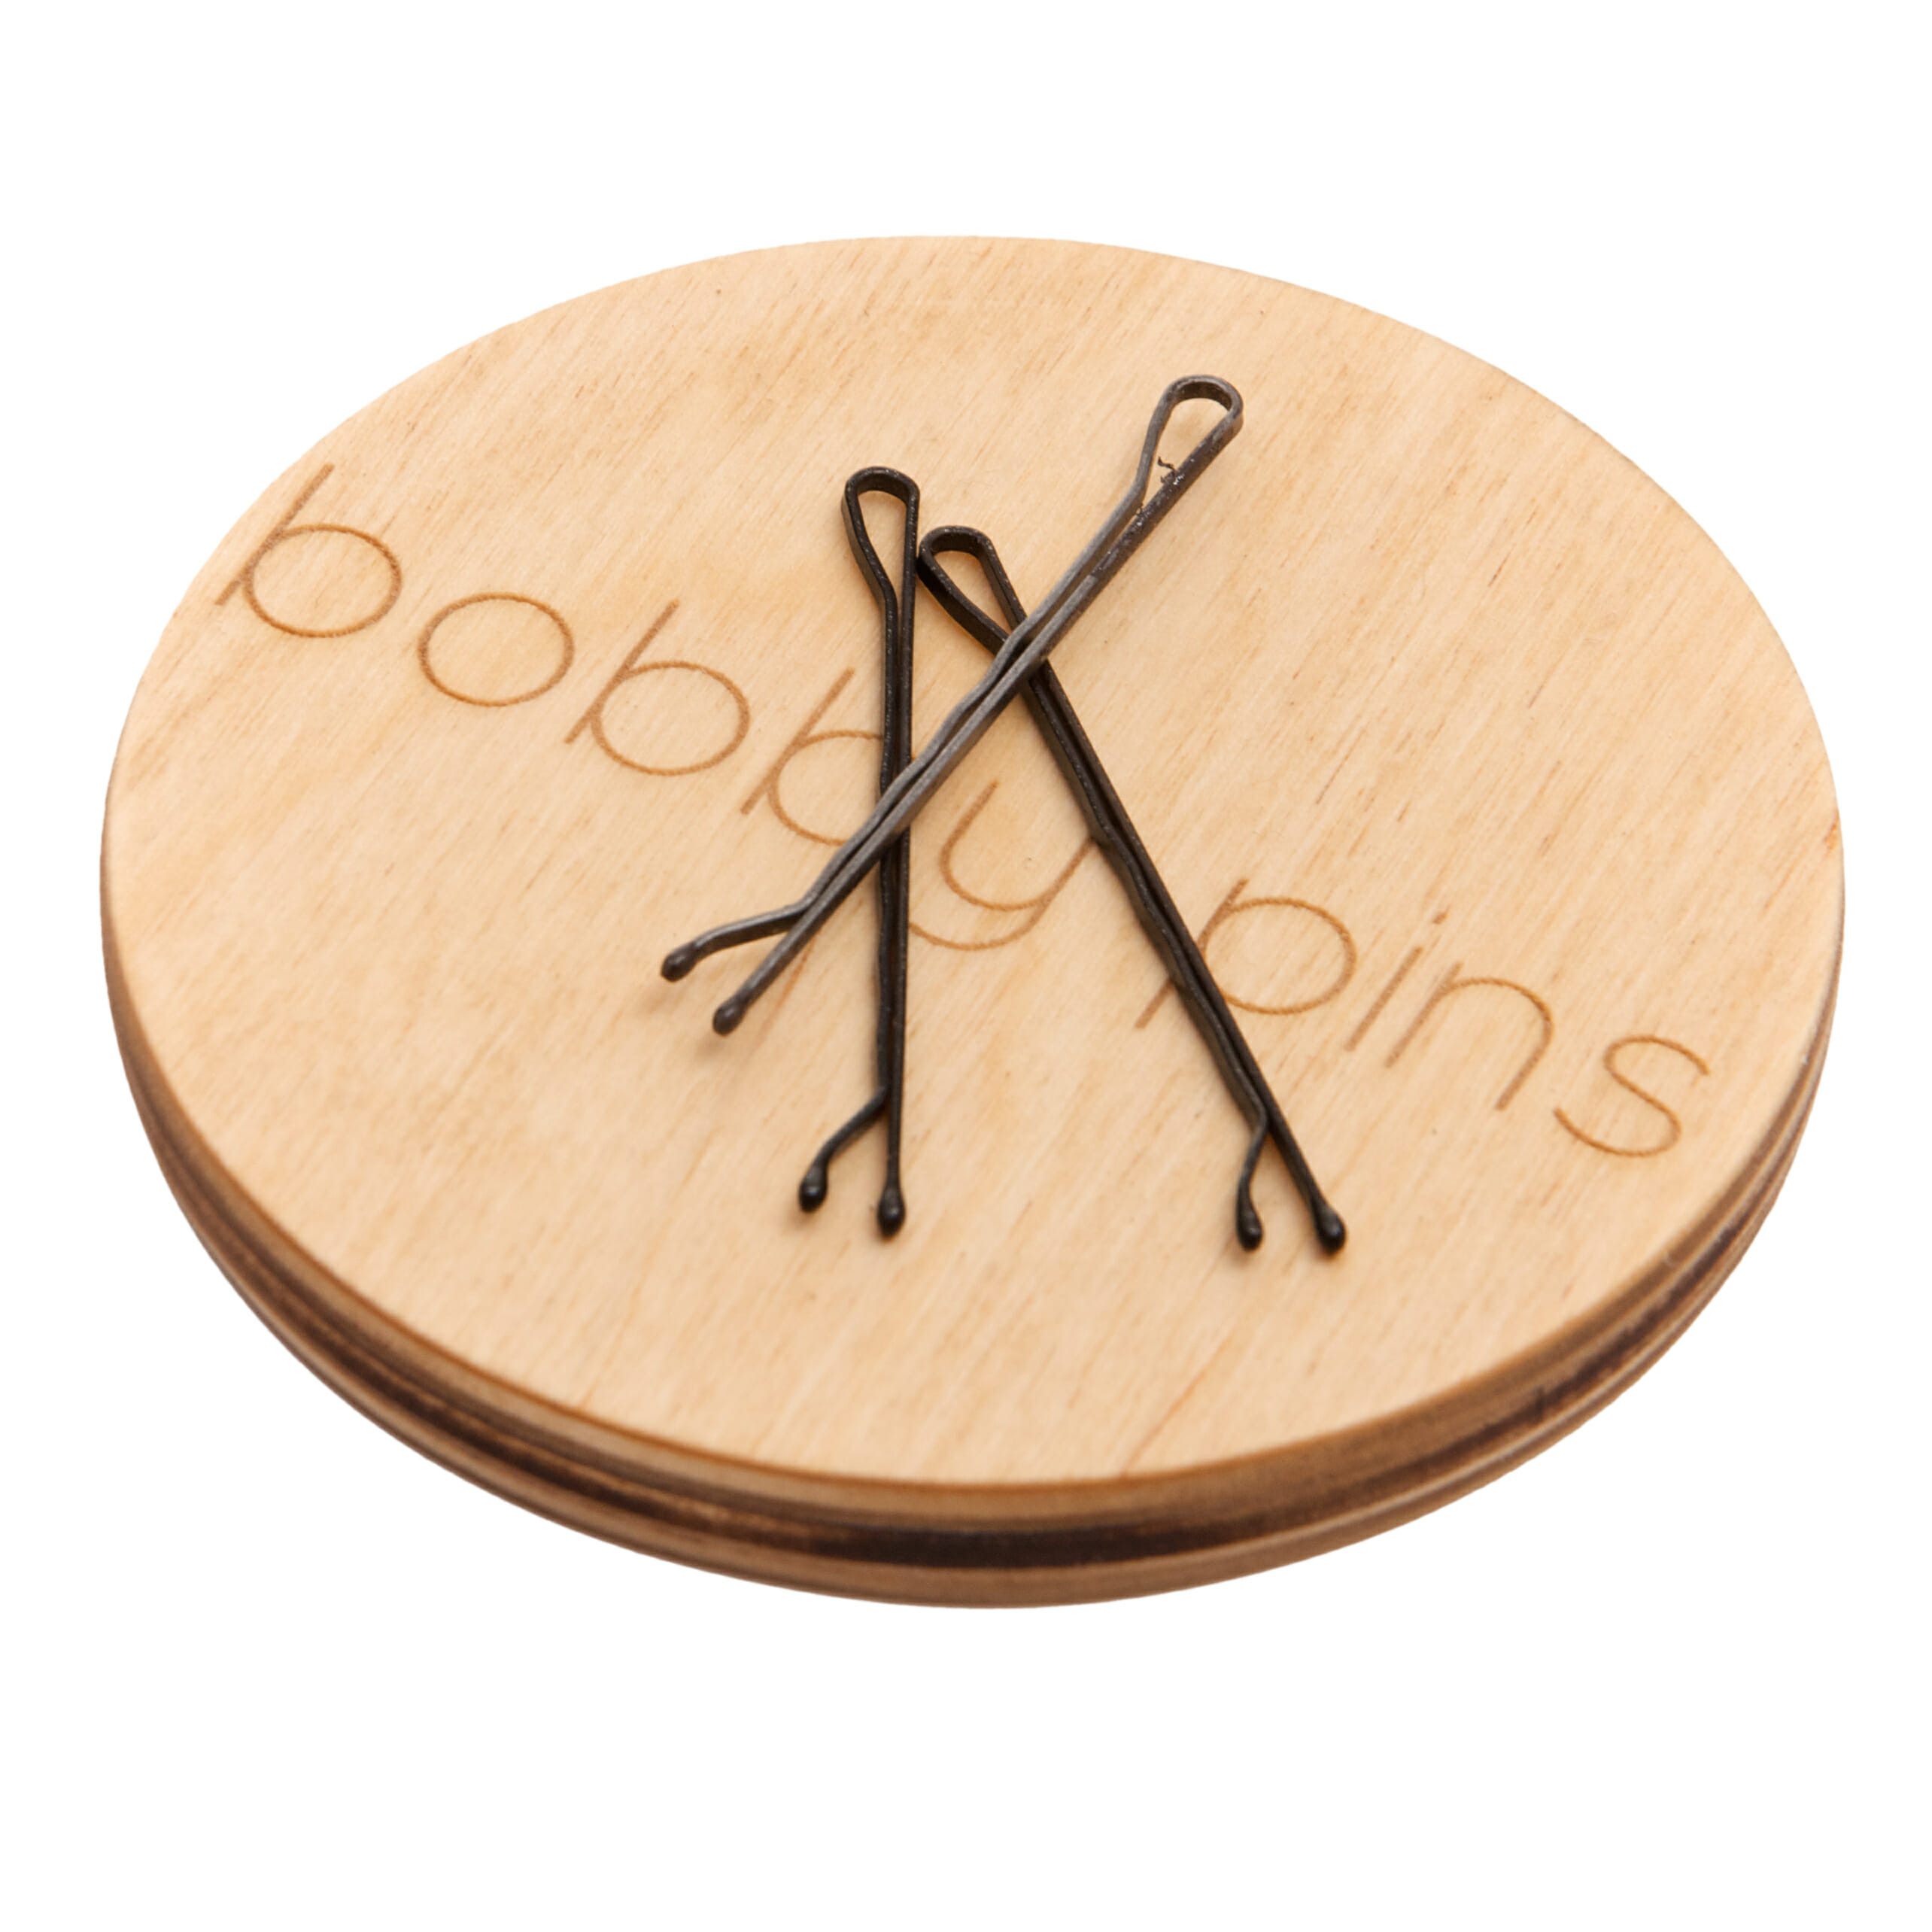 Bobby pin holder, Bobby pin magnet, Hair pin holder